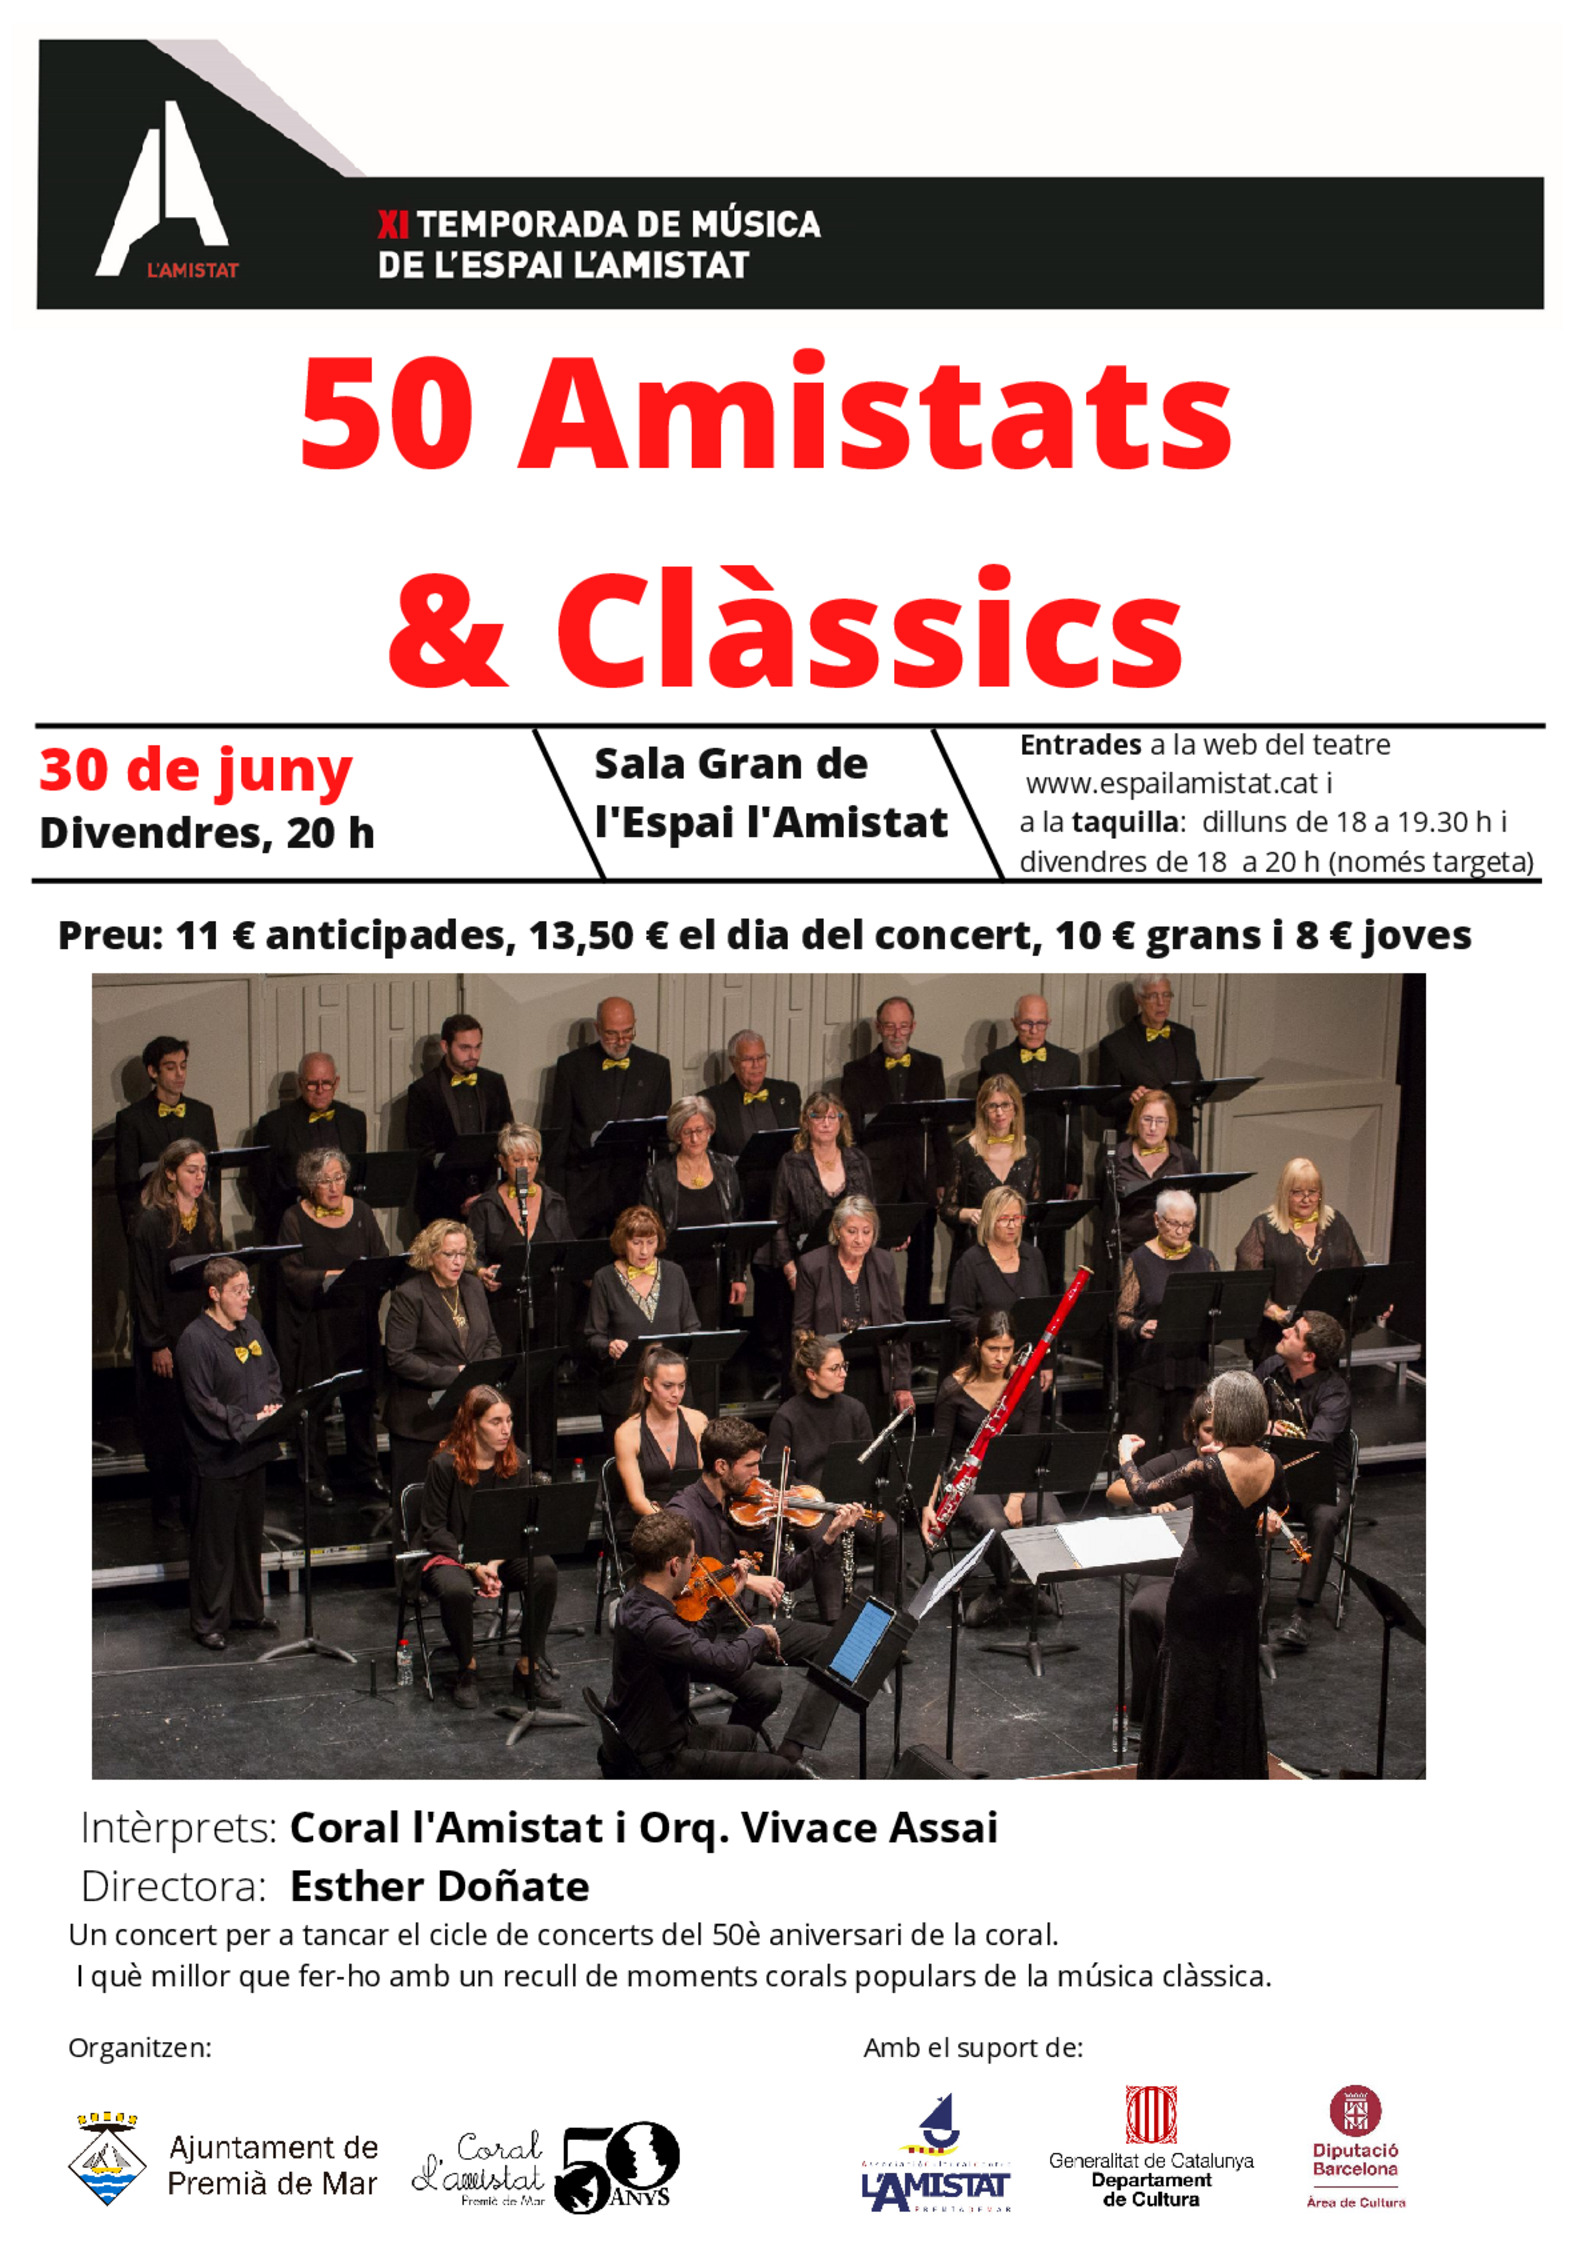 50 Amistats & Clàssics